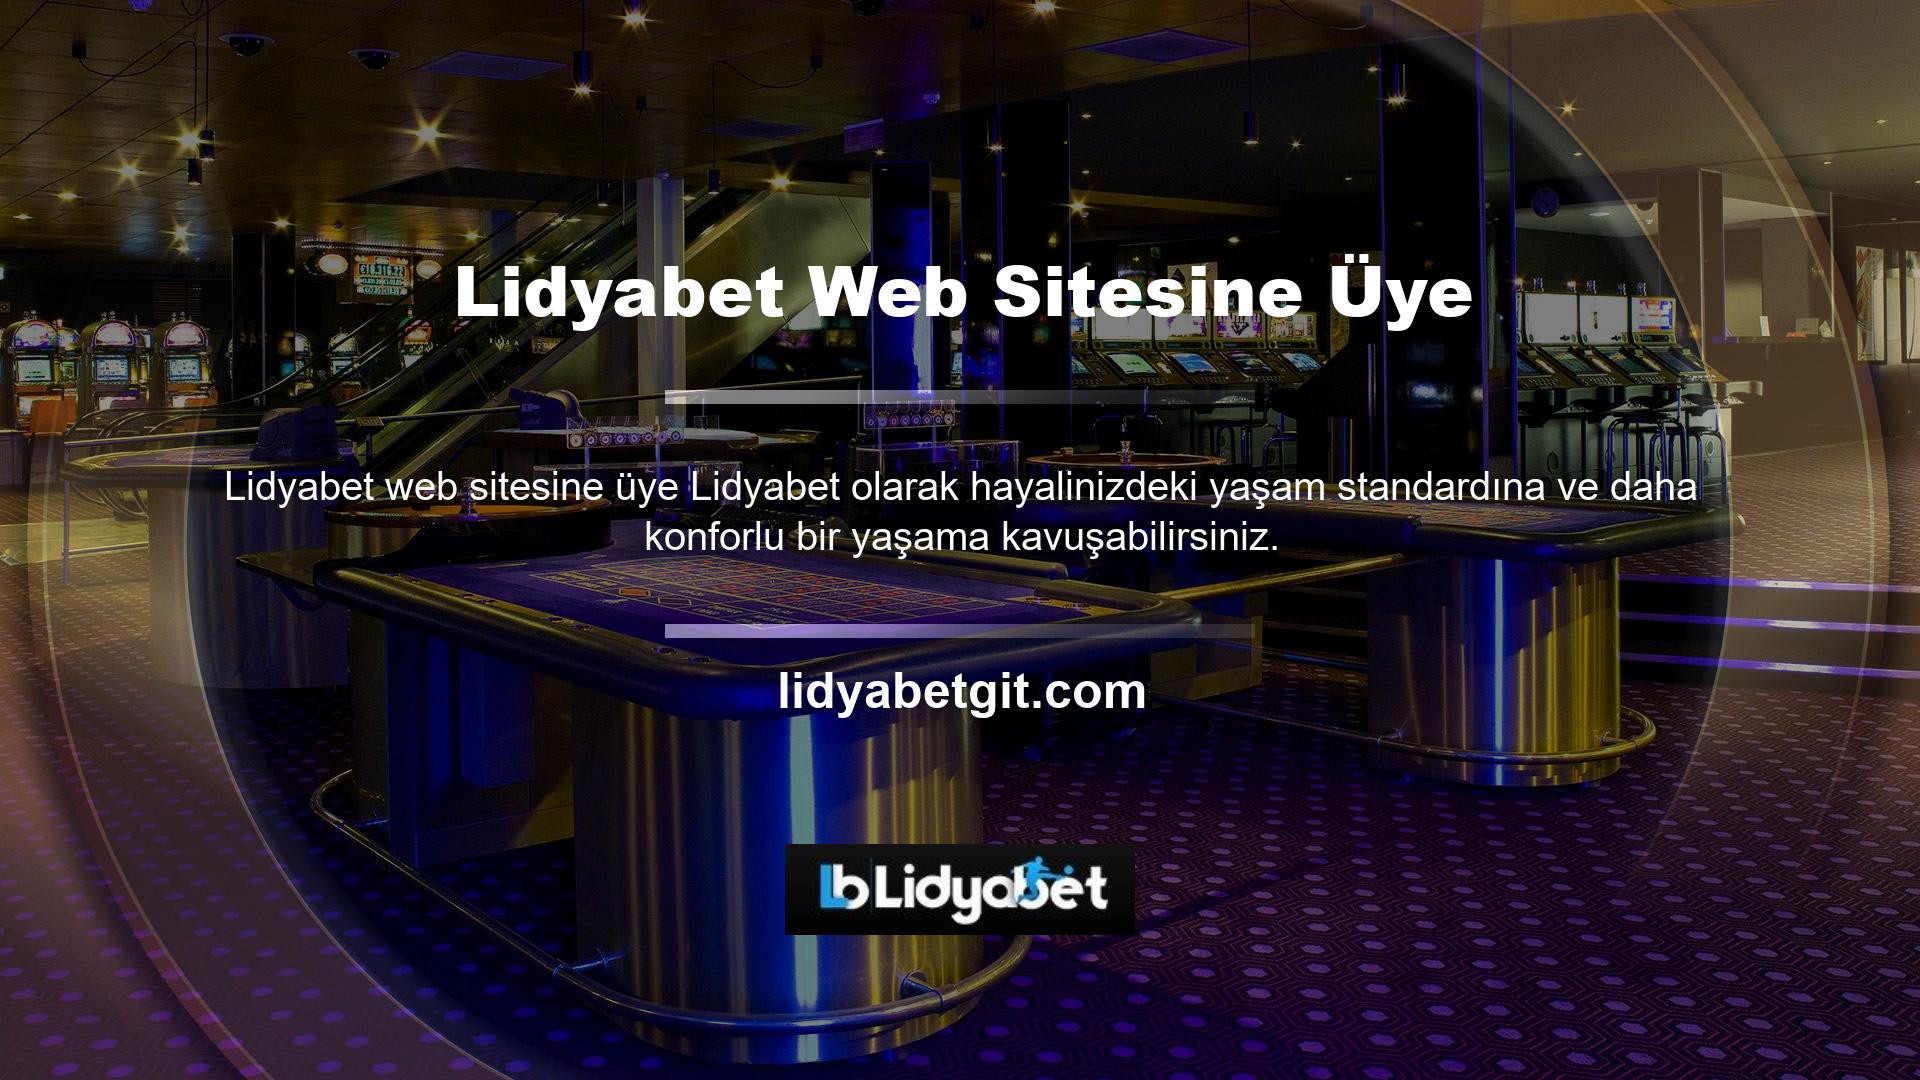 Casino sektörüne hizmet veren Lidyabet, en güvenilir sitelerden biridir